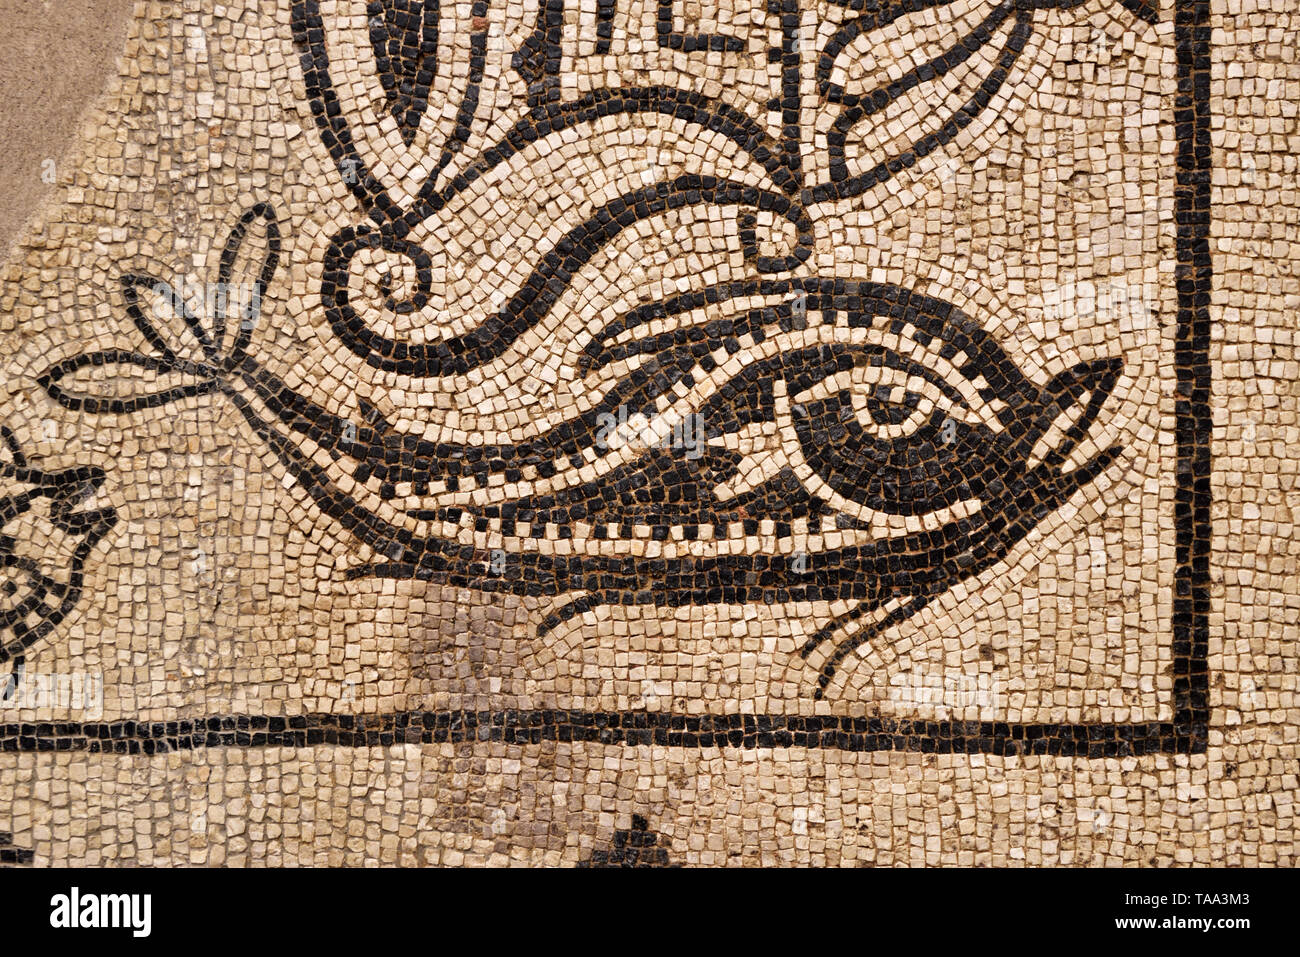 Mosaïque romaine représentant un dauphin. 2e siècle de notre ère. Museo Nacional de Arte Romano (Musée National d'art romain). Merida, Espagne Banque D'Images